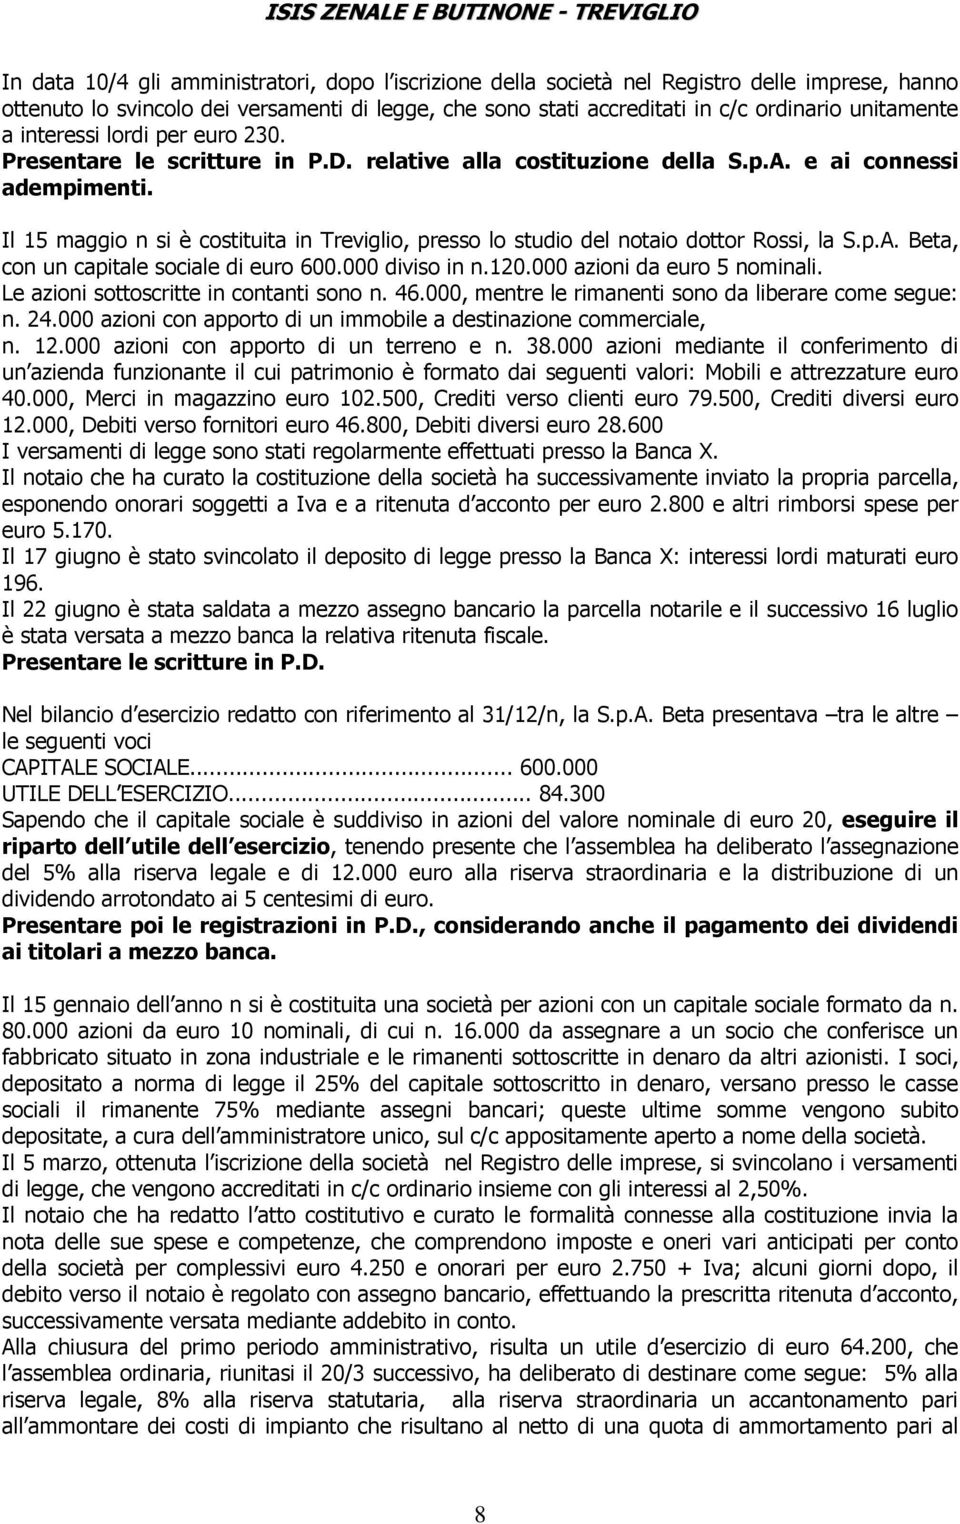 Il 15 maggio n si è costituita in Treviglio, presso lo studio del notaio dottor Rossi, la S.p.A. Beta, con un capitale sociale di euro 600.000 diviso in n.120.000 azioni da euro 5 nominali.